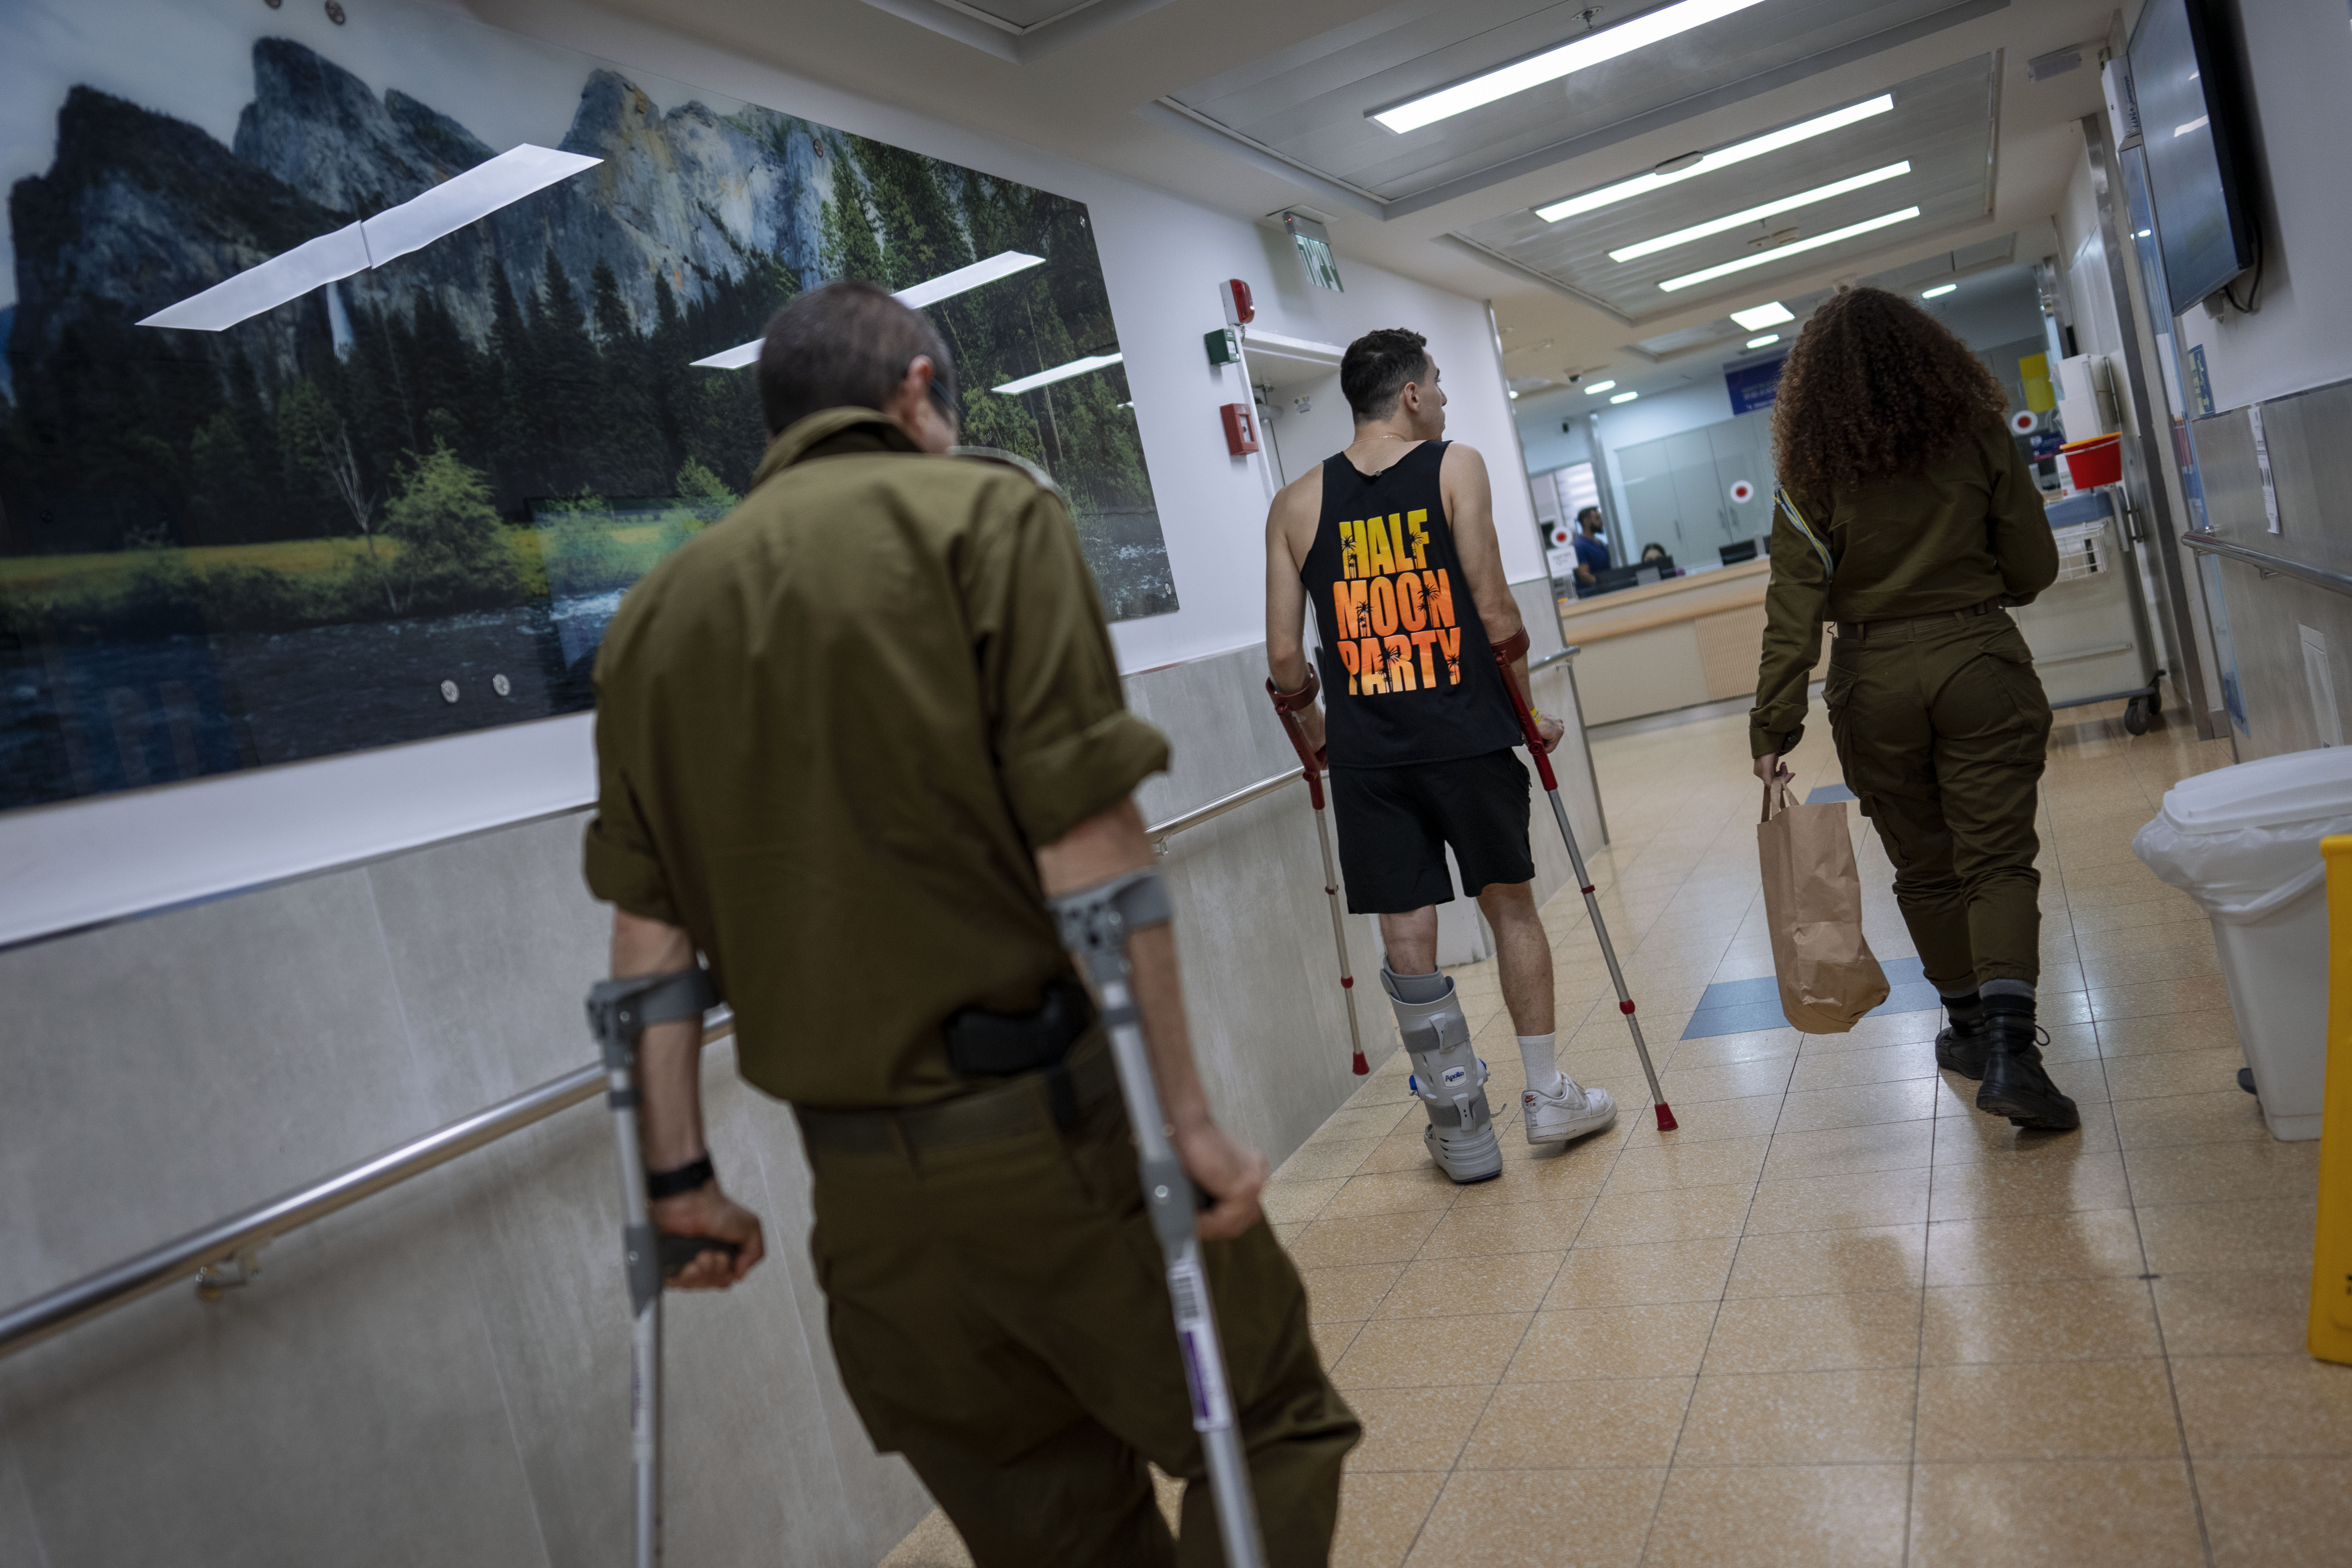 حماس کے ساتھ جنگ میں زخمی ہونے والے اسرائیلی فوجی اسرائیل کے شہر رامات گان میں واقع شیبا ہسپتال کے بحالی ڈویژن میں